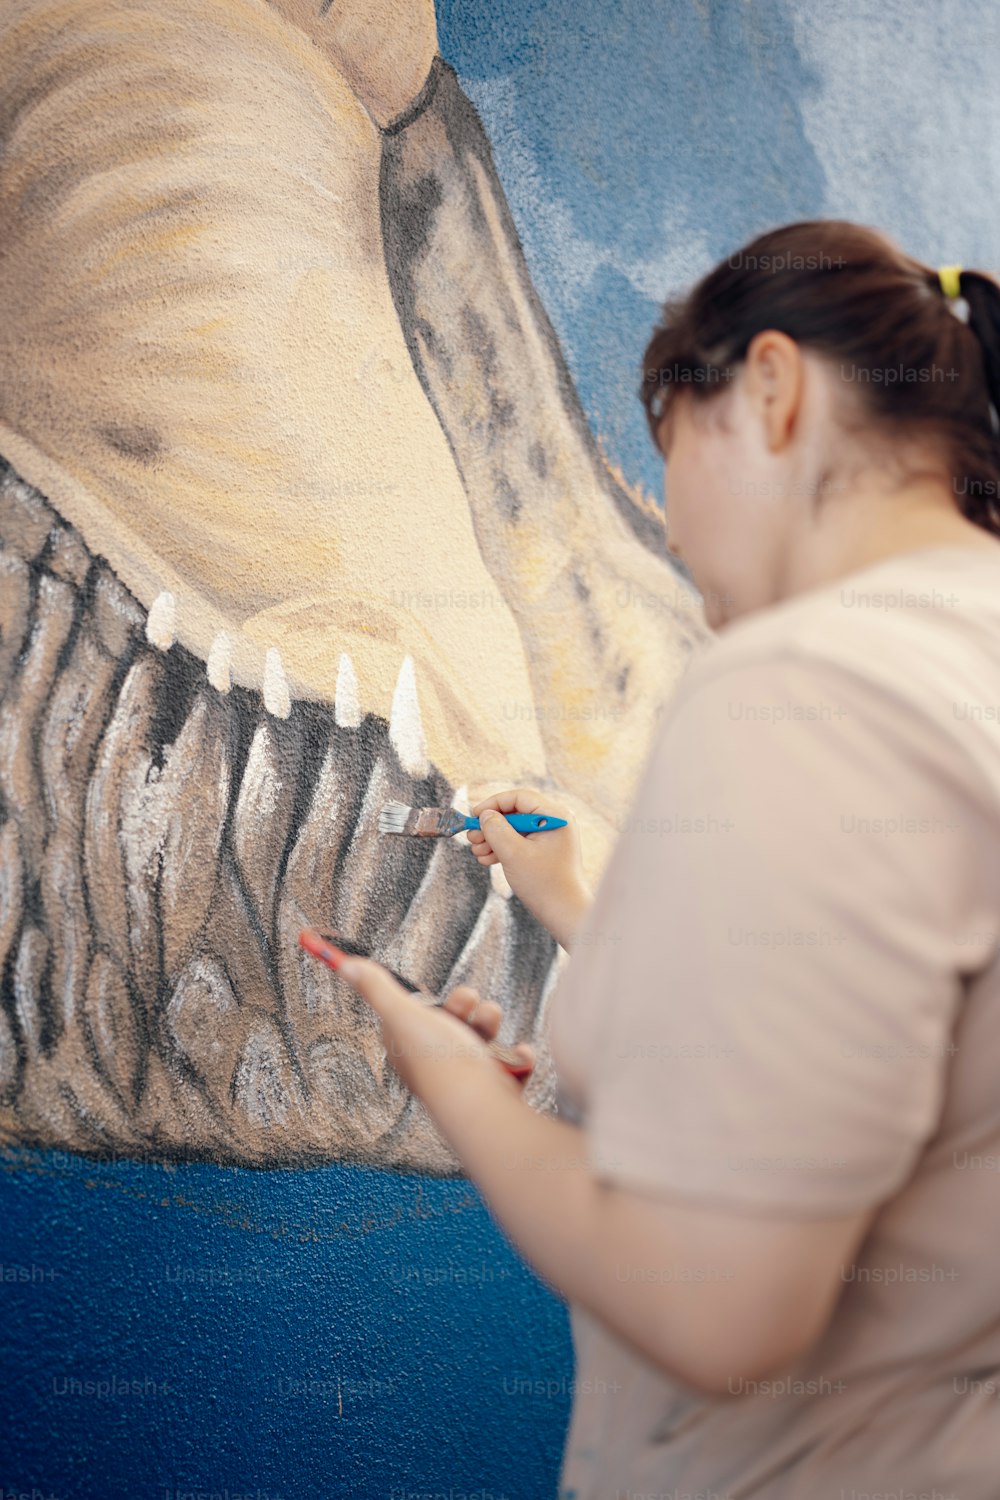 Una mujer está pintando un cuadro de un dinosaurio